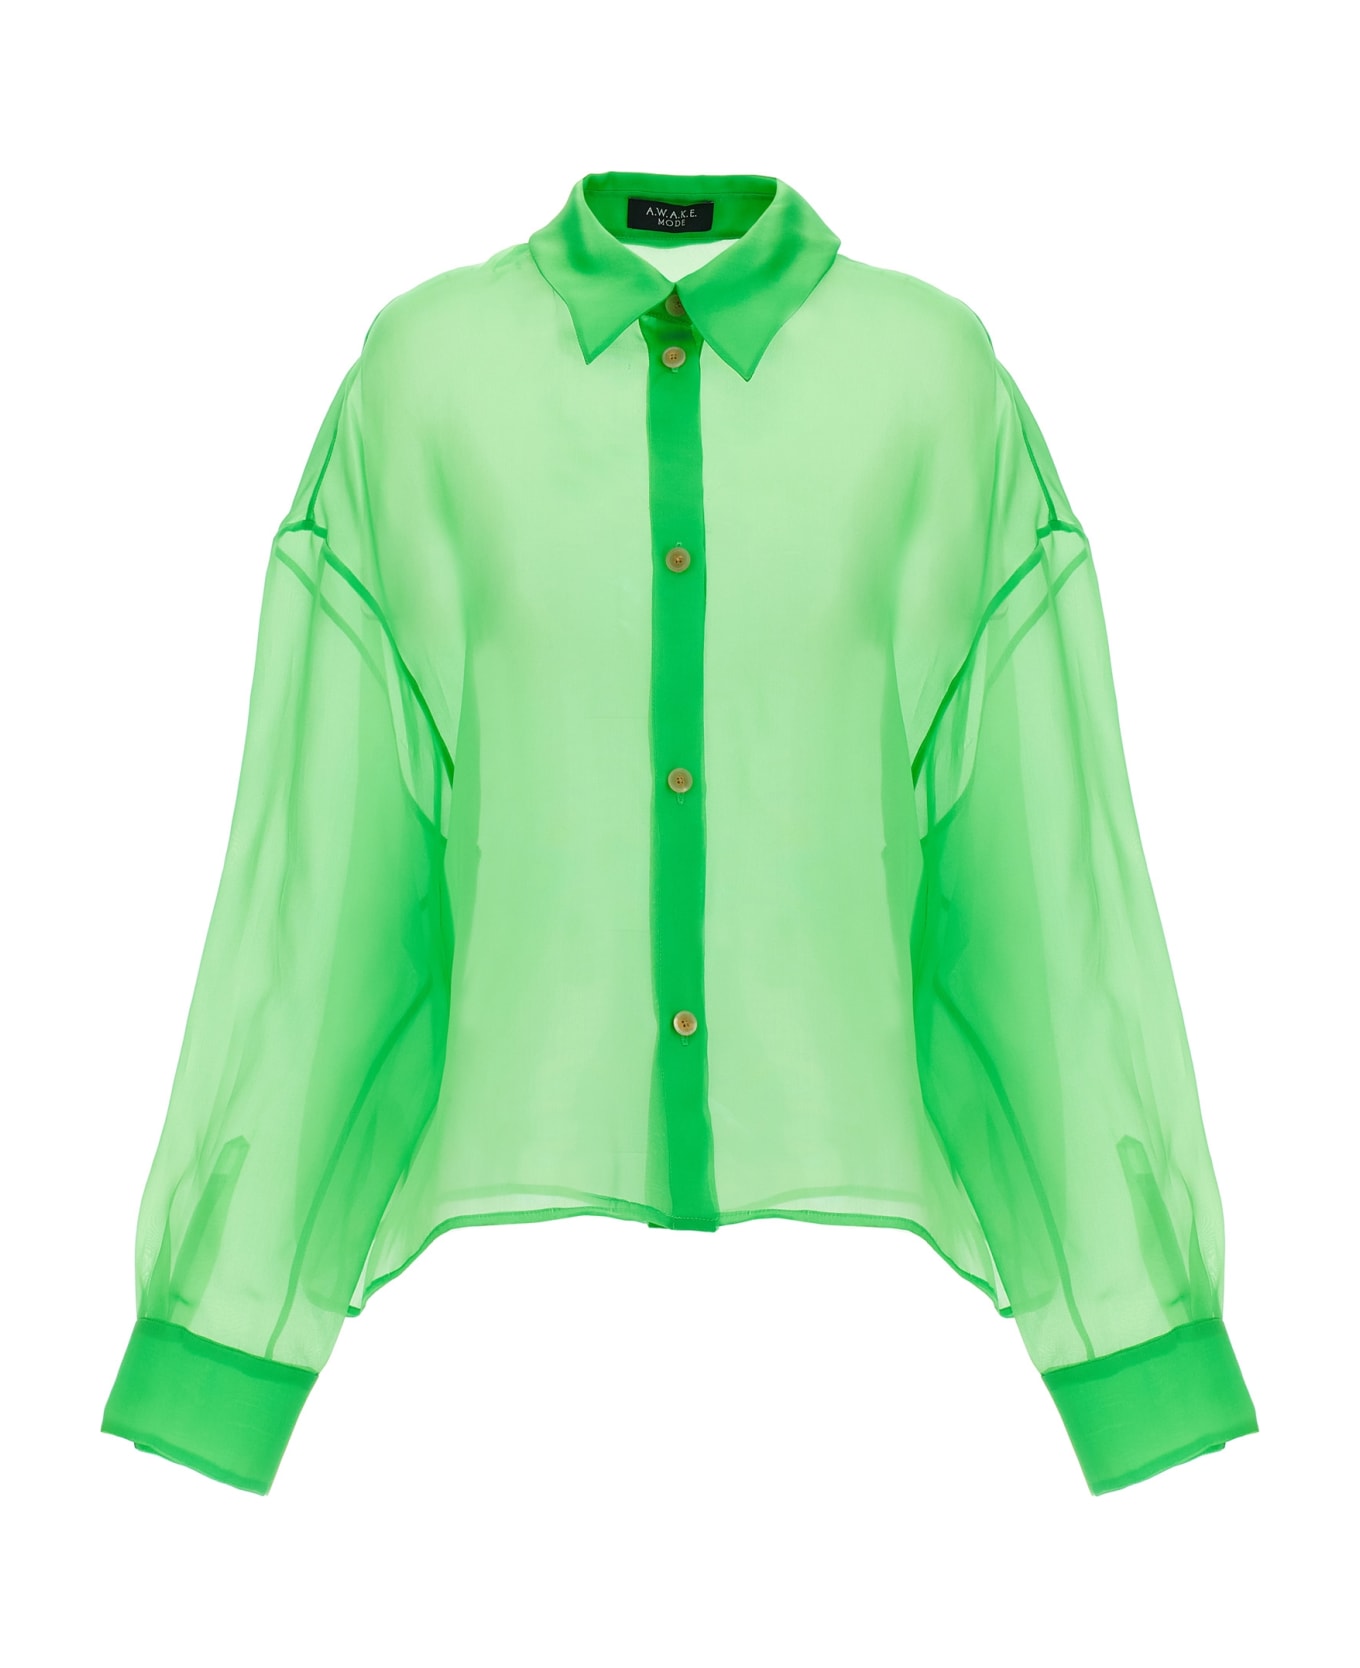 A.W.A.K.E. Mode Organdy 80s Shirt - Green